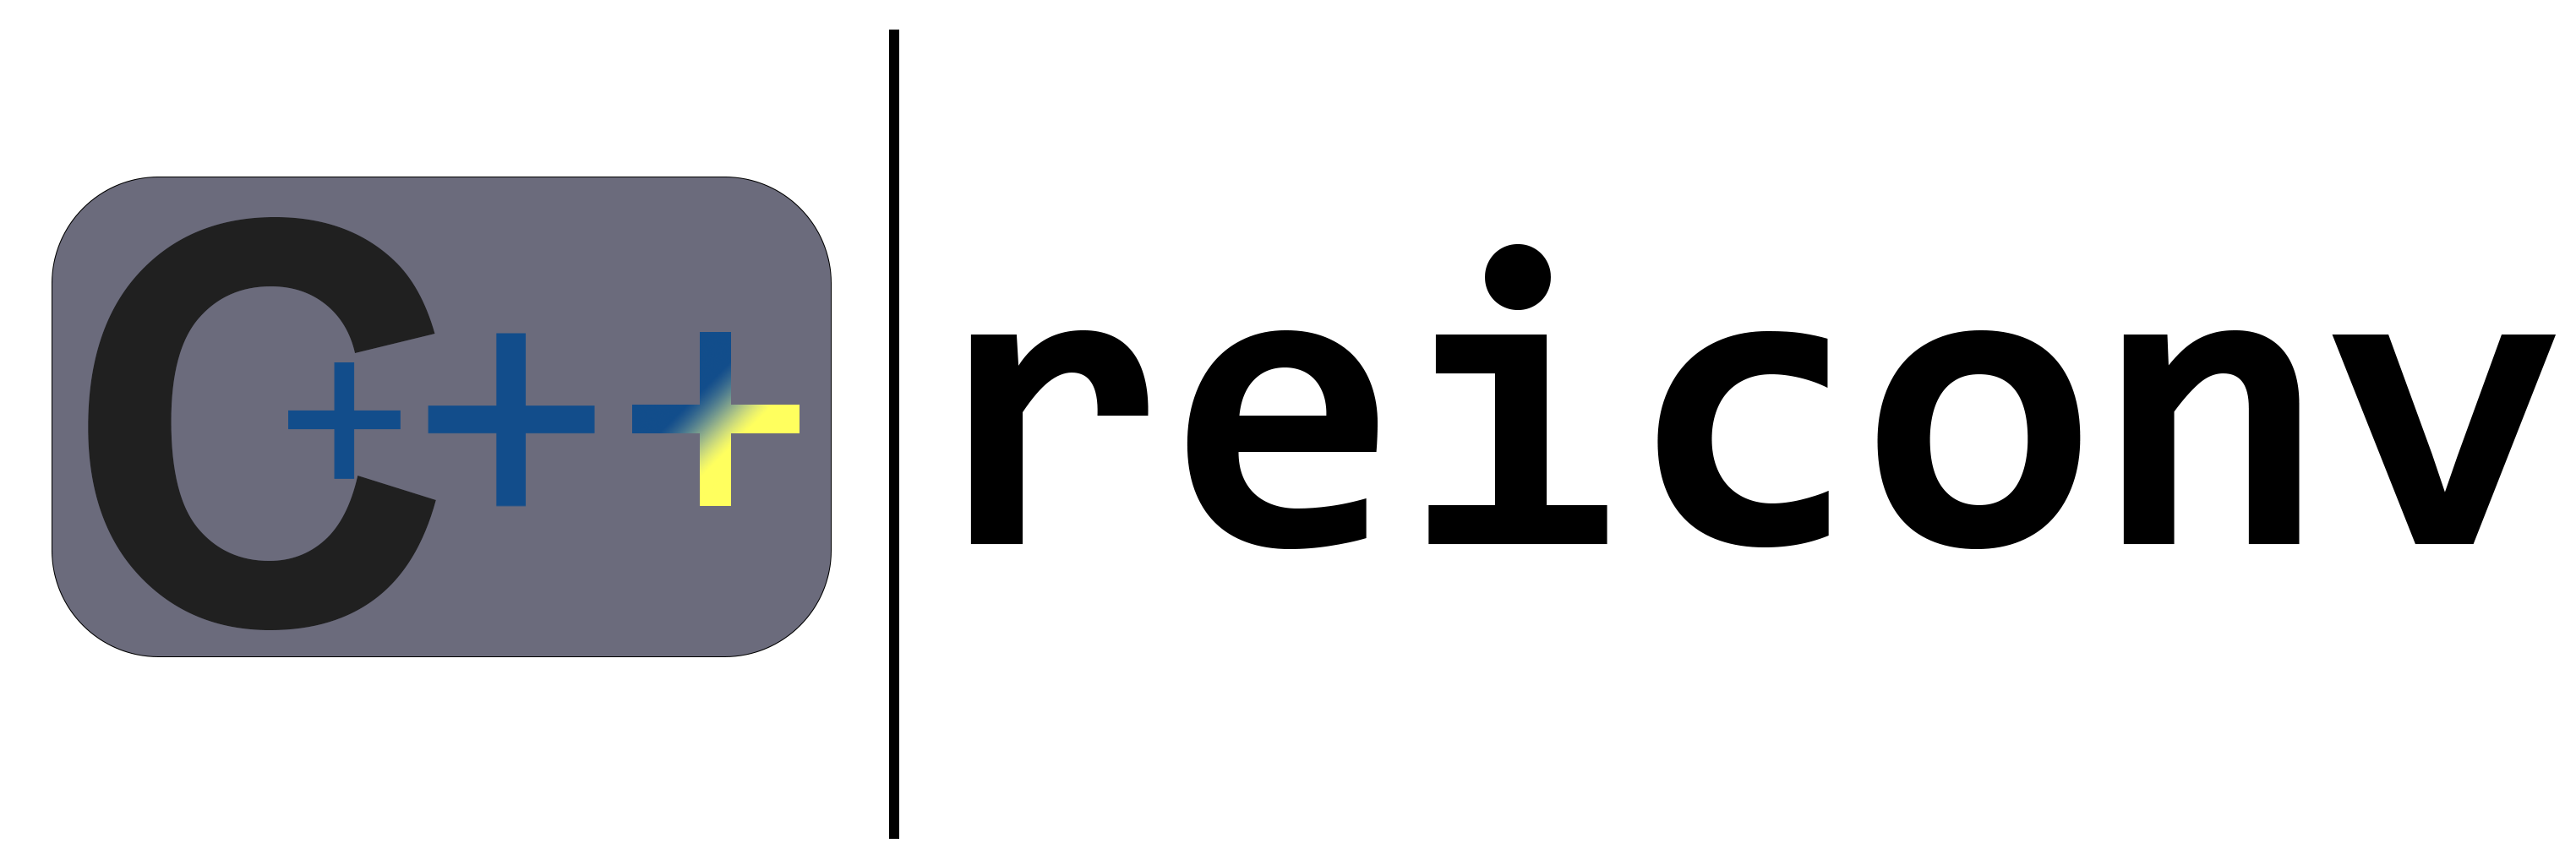 cppp-reiconv logo